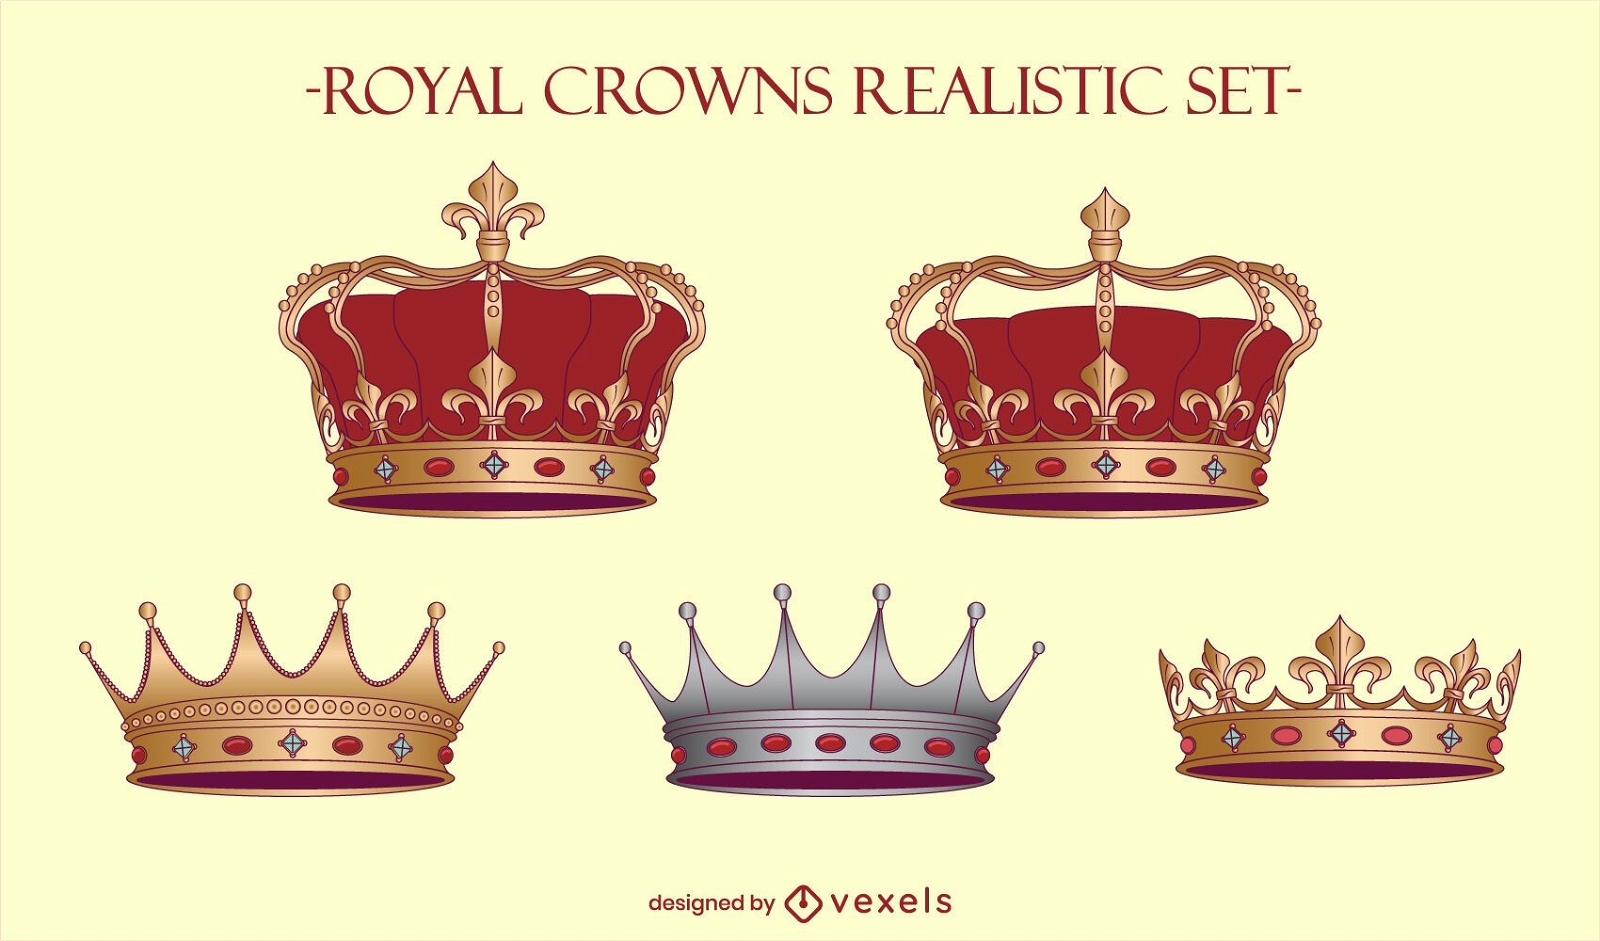 Royal crowns king illustration set